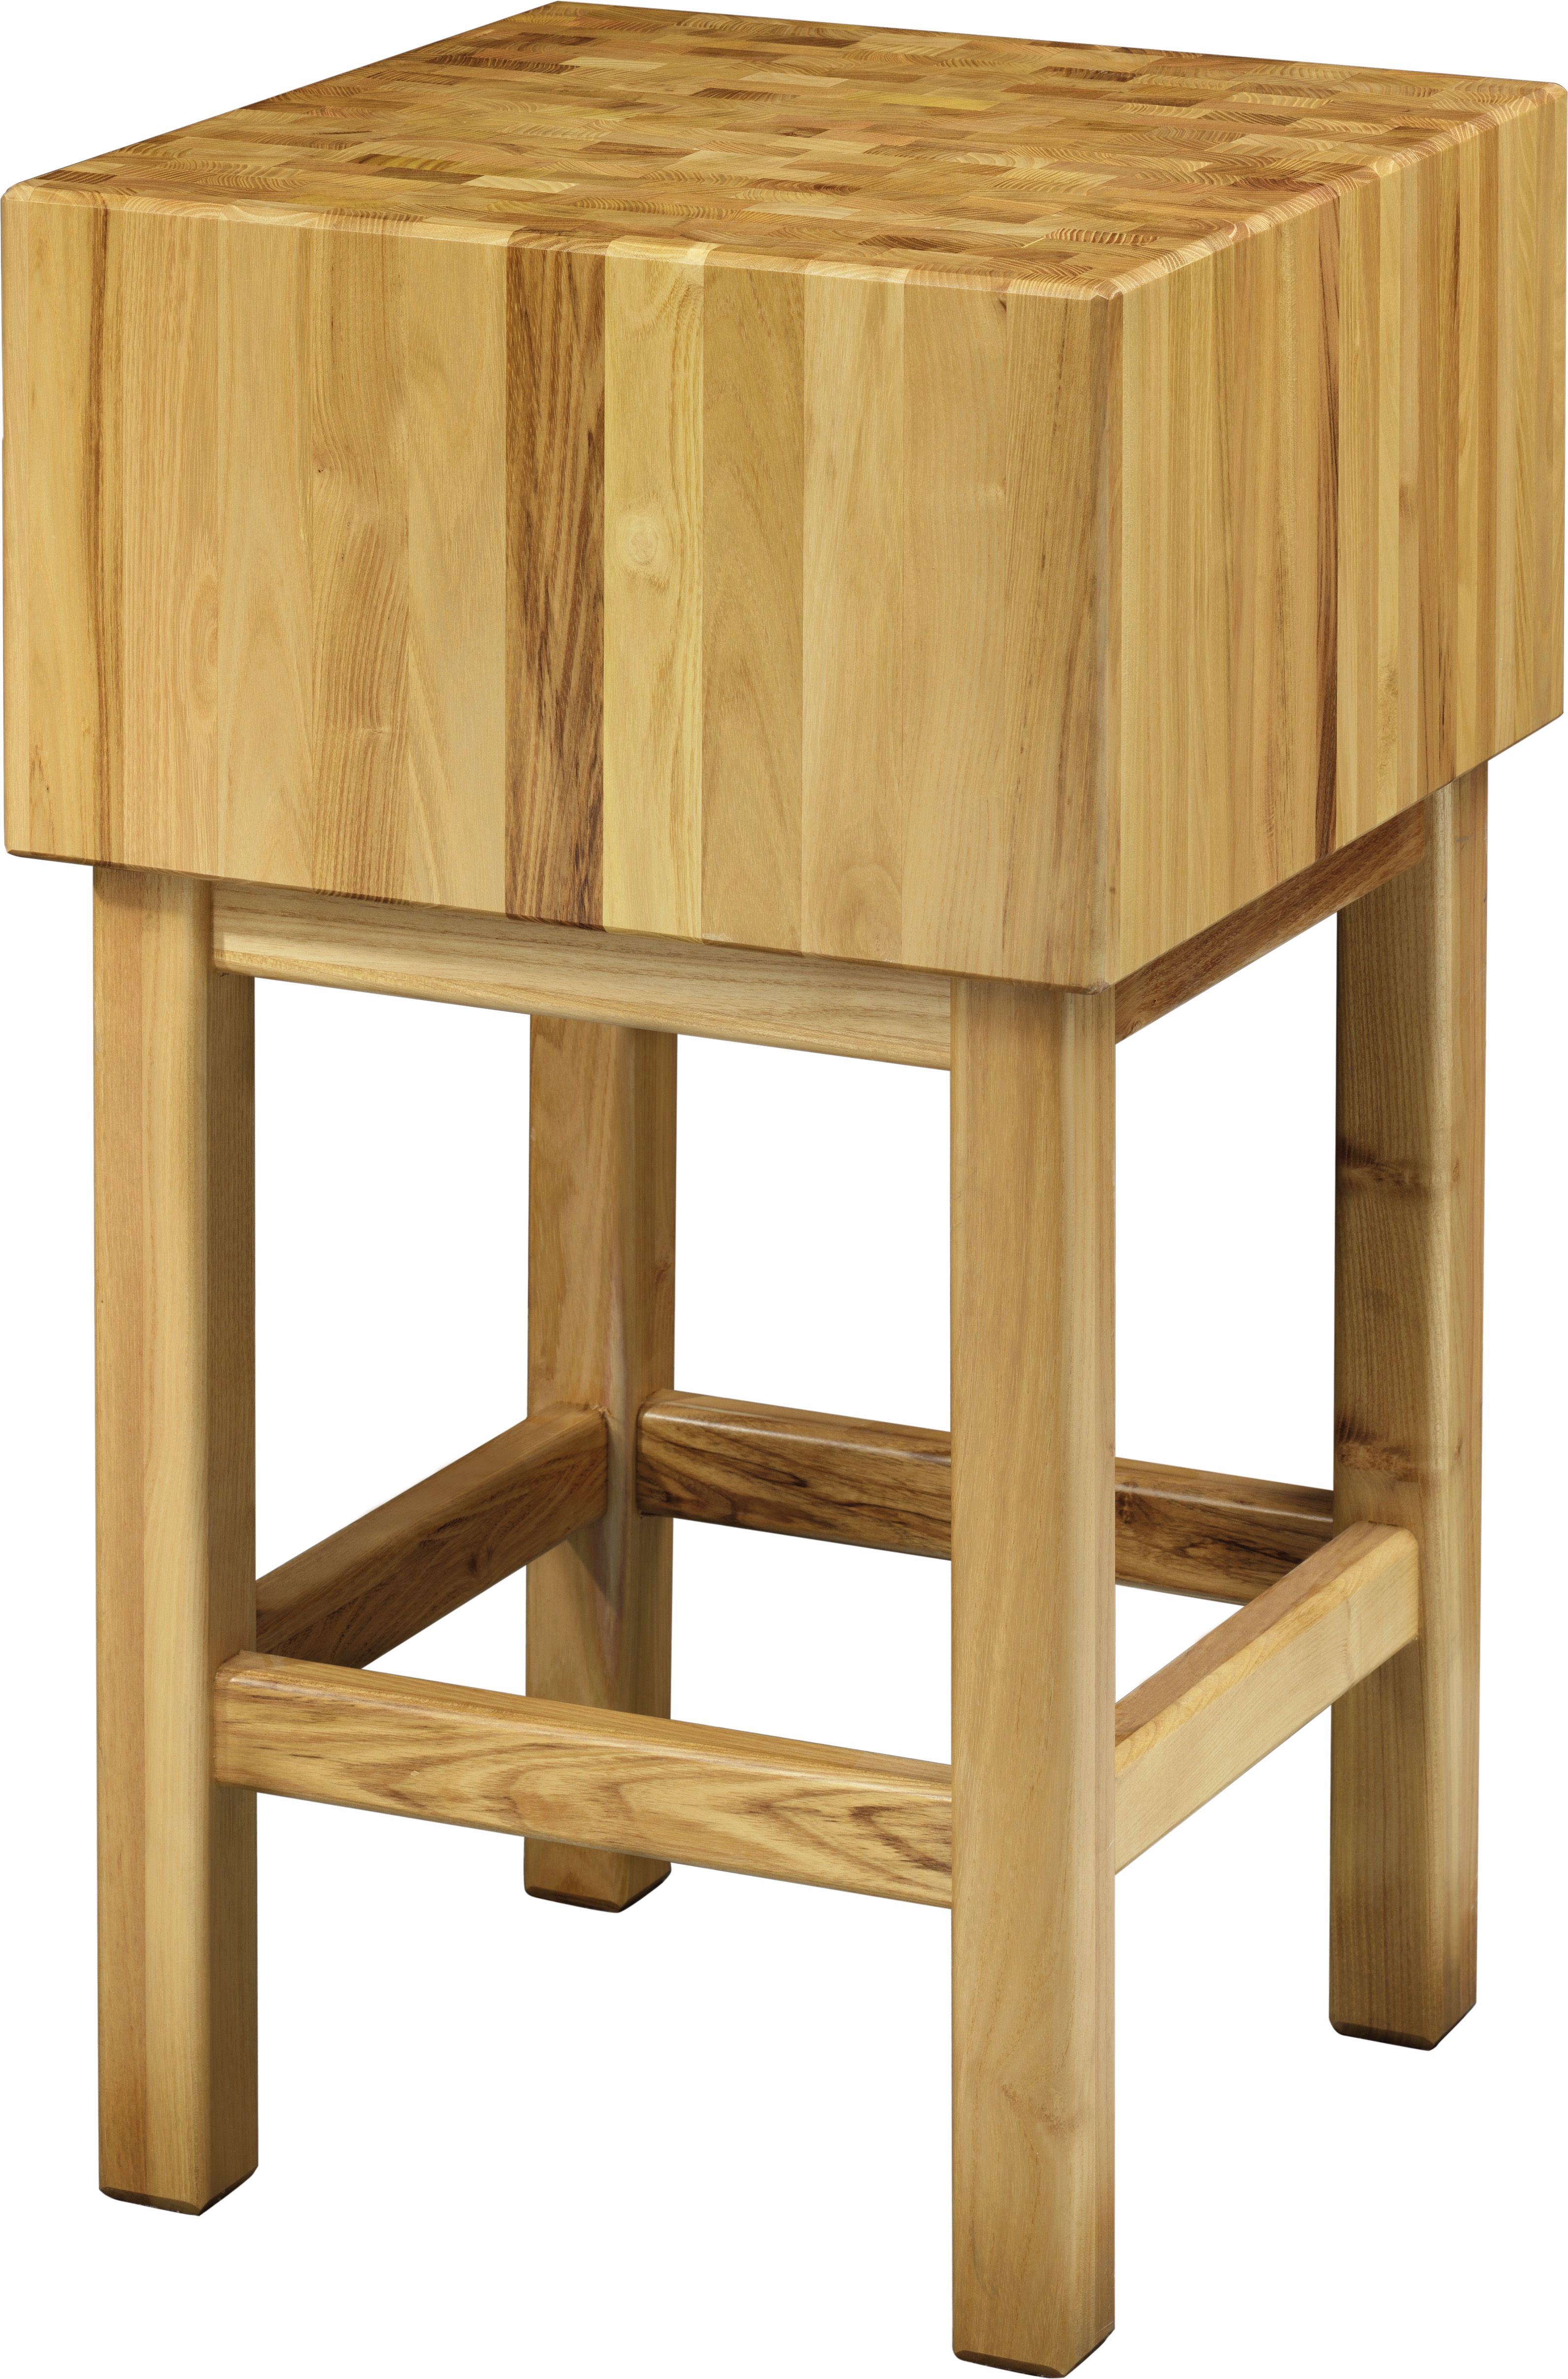 Hackblock – Holz – Stärke 25 cm – Untergestell Masse 70 x 70 x 90 cm